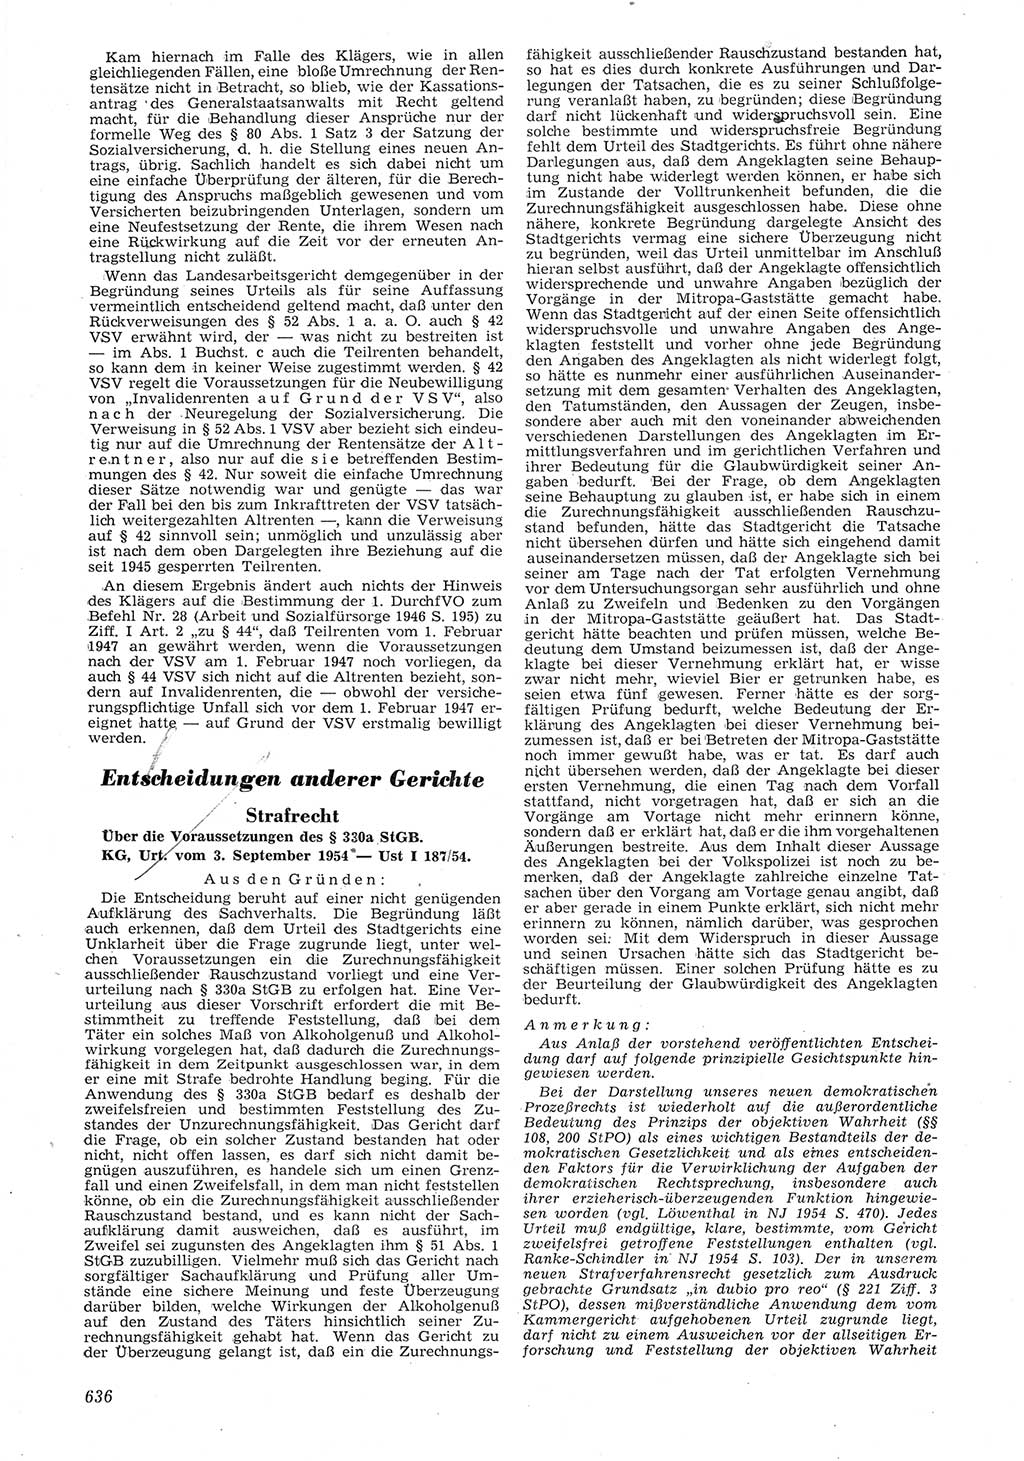 Neue Justiz (NJ), Zeitschrift für Recht und Rechtswissenschaft [Deutsche Demokratische Republik (DDR)], 8. Jahrgang 1954, Seite 636 (NJ DDR 1954, S. 636)